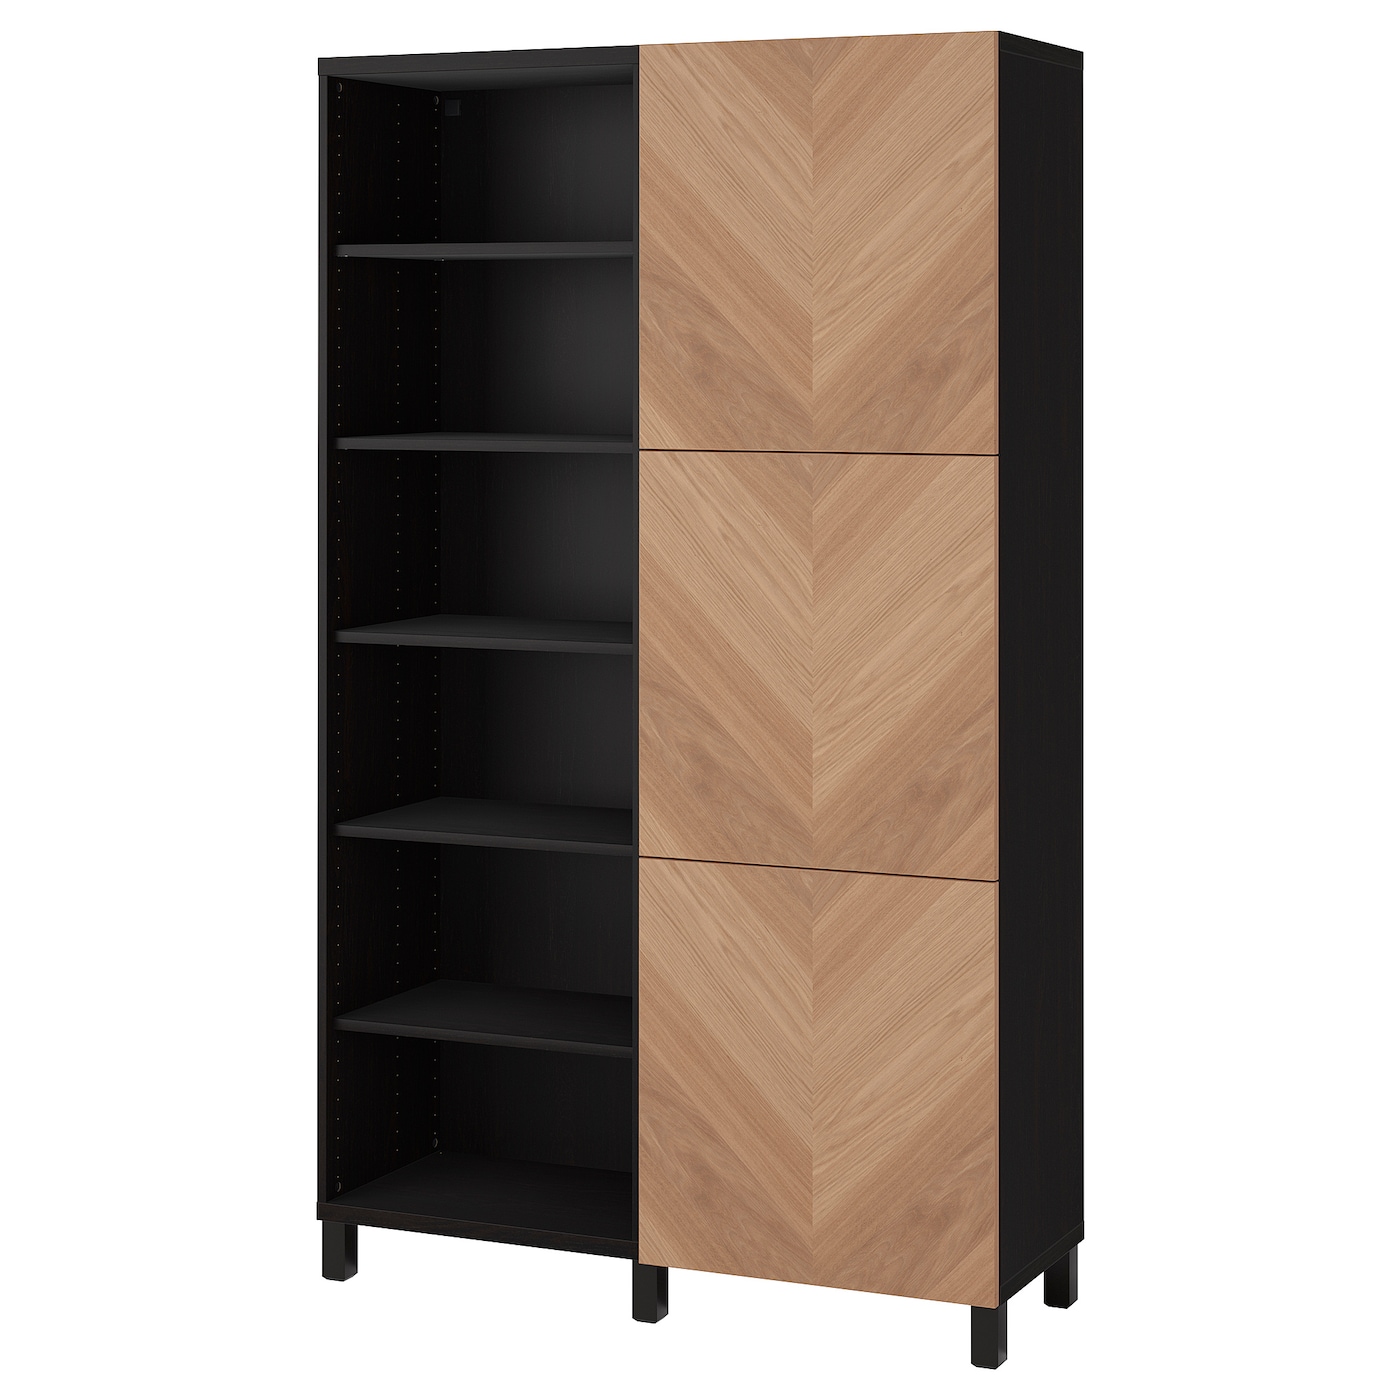 Книжный шкаф с дверцей - IKEA BESTÅ/BESTA, 120x42x202 см, черный, Беста/Бесто ИКЕА